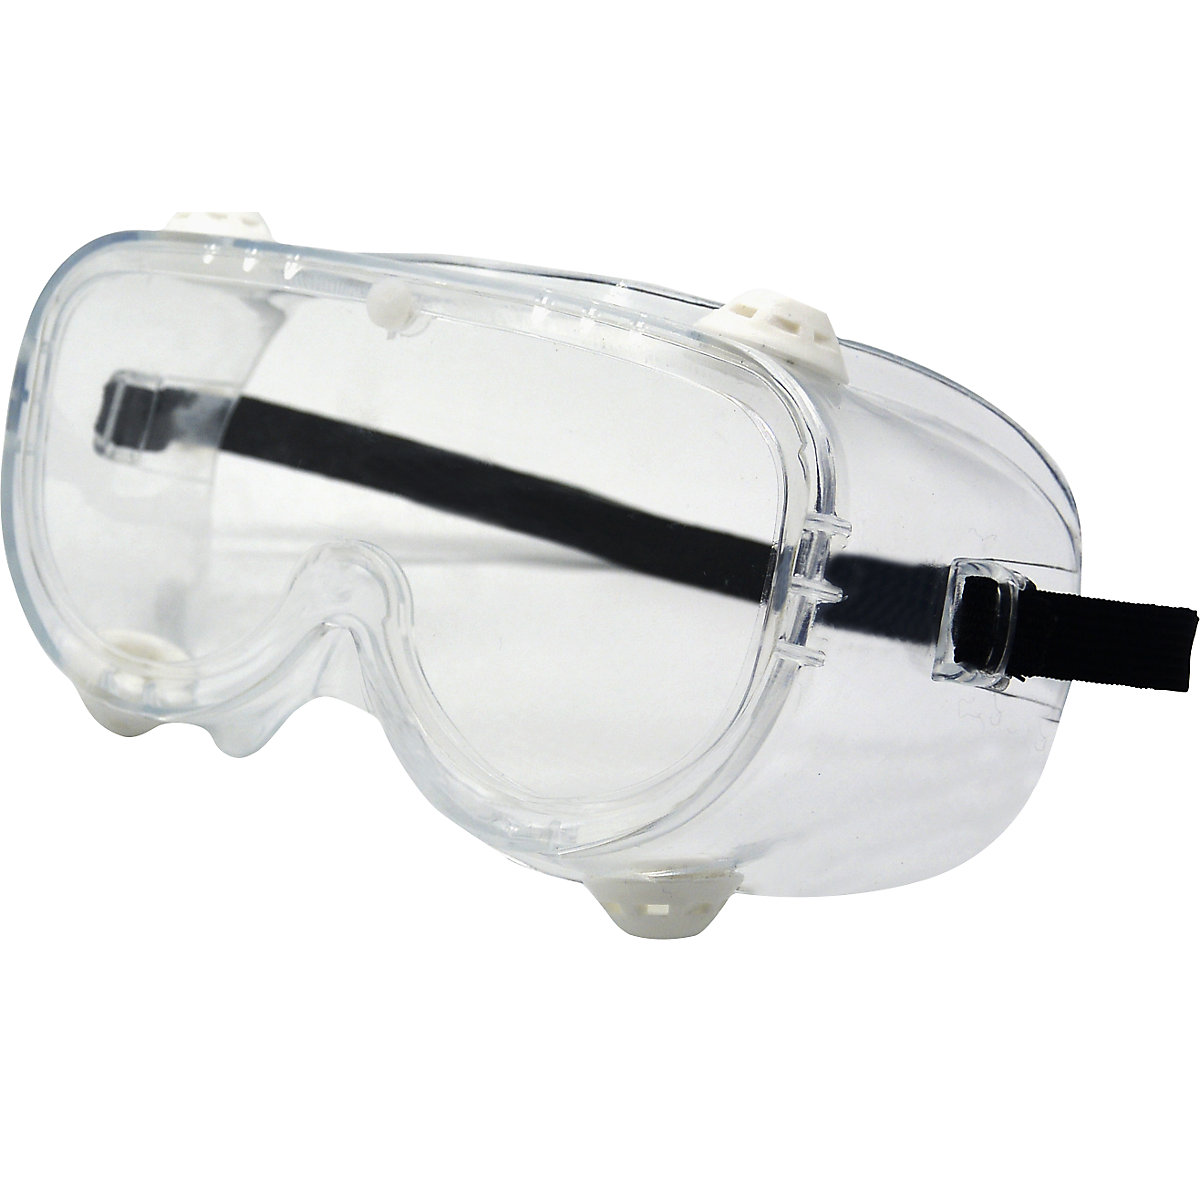 Ochranné okuliare s neobmedzeným výhľadom EN 166 (OJ 10 alebo 200 ks)